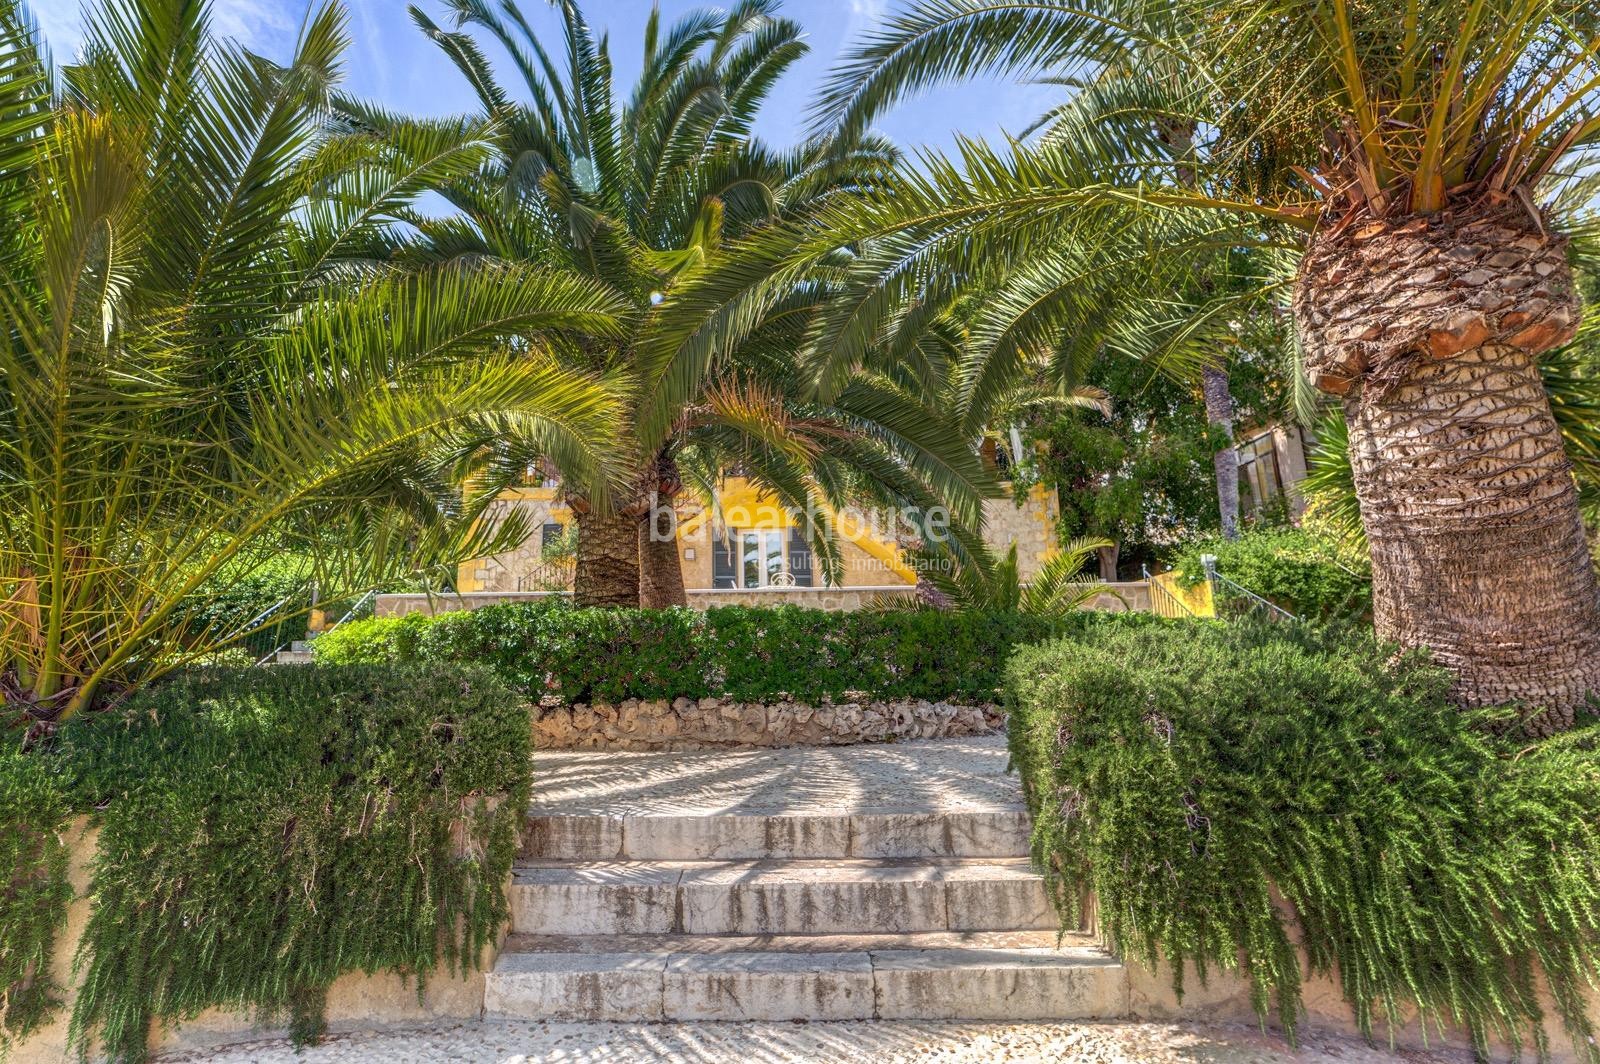 Gran villa señorial junto al Paseo Marítimo de Palma con piscina, jardín y unos modernos interiores